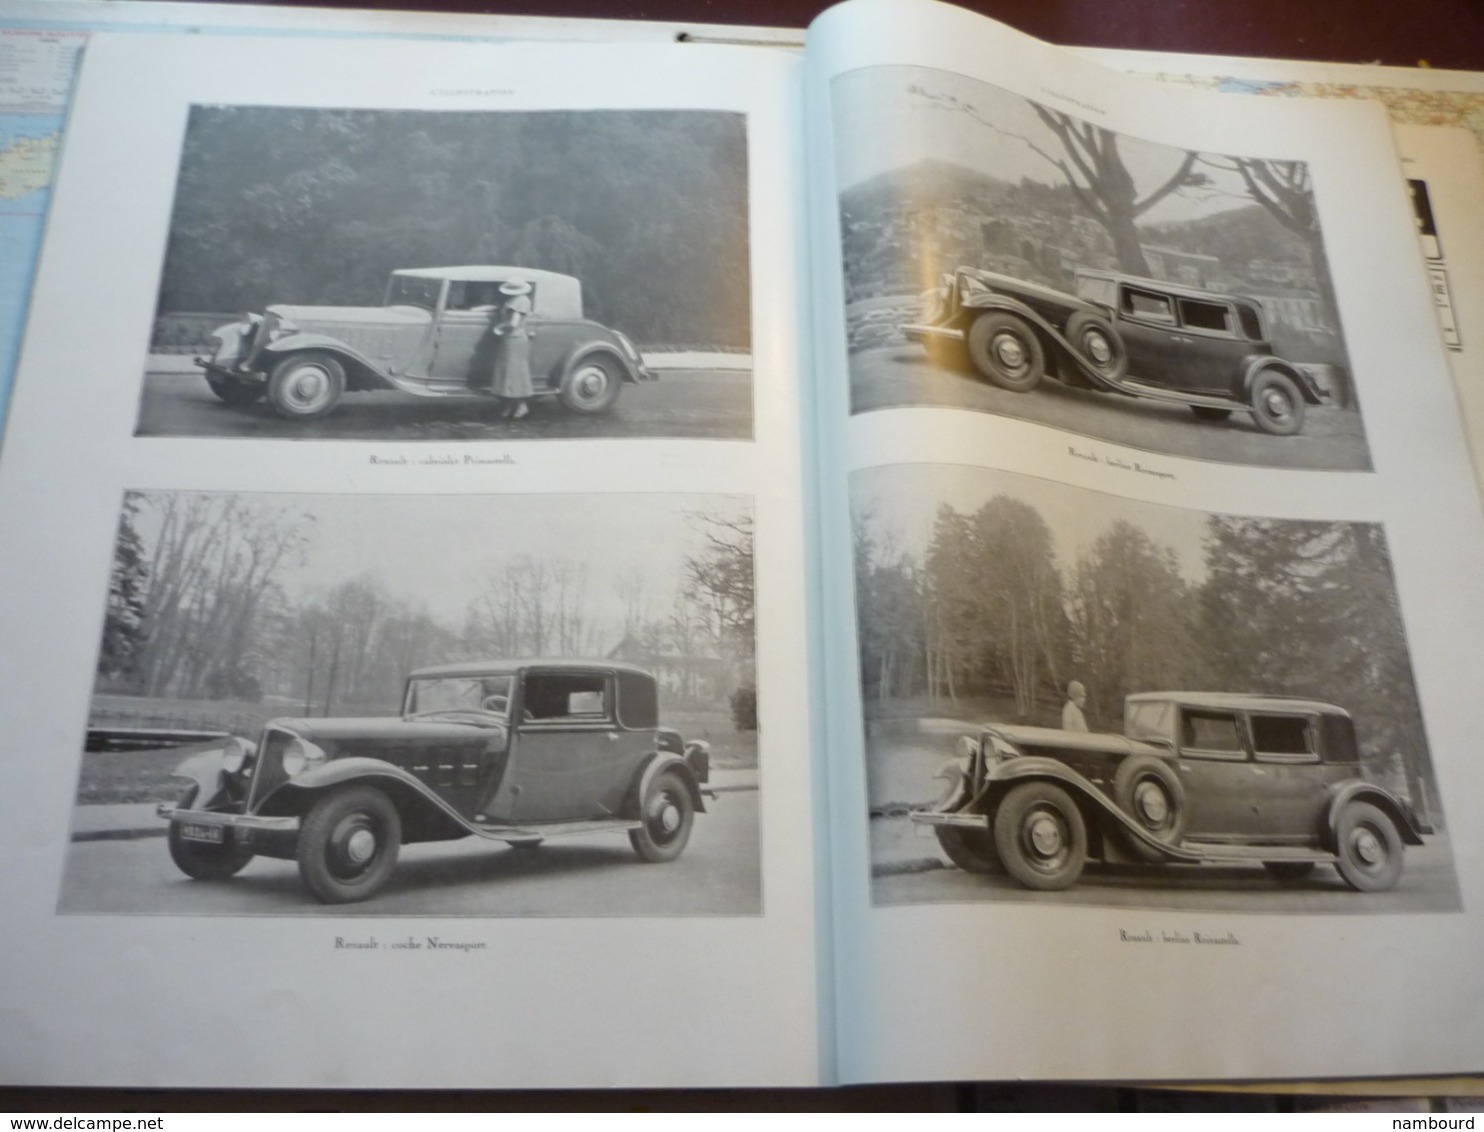 L'Illustration 'Automobile et le tourisme Numéro du salon de l'auto 1932